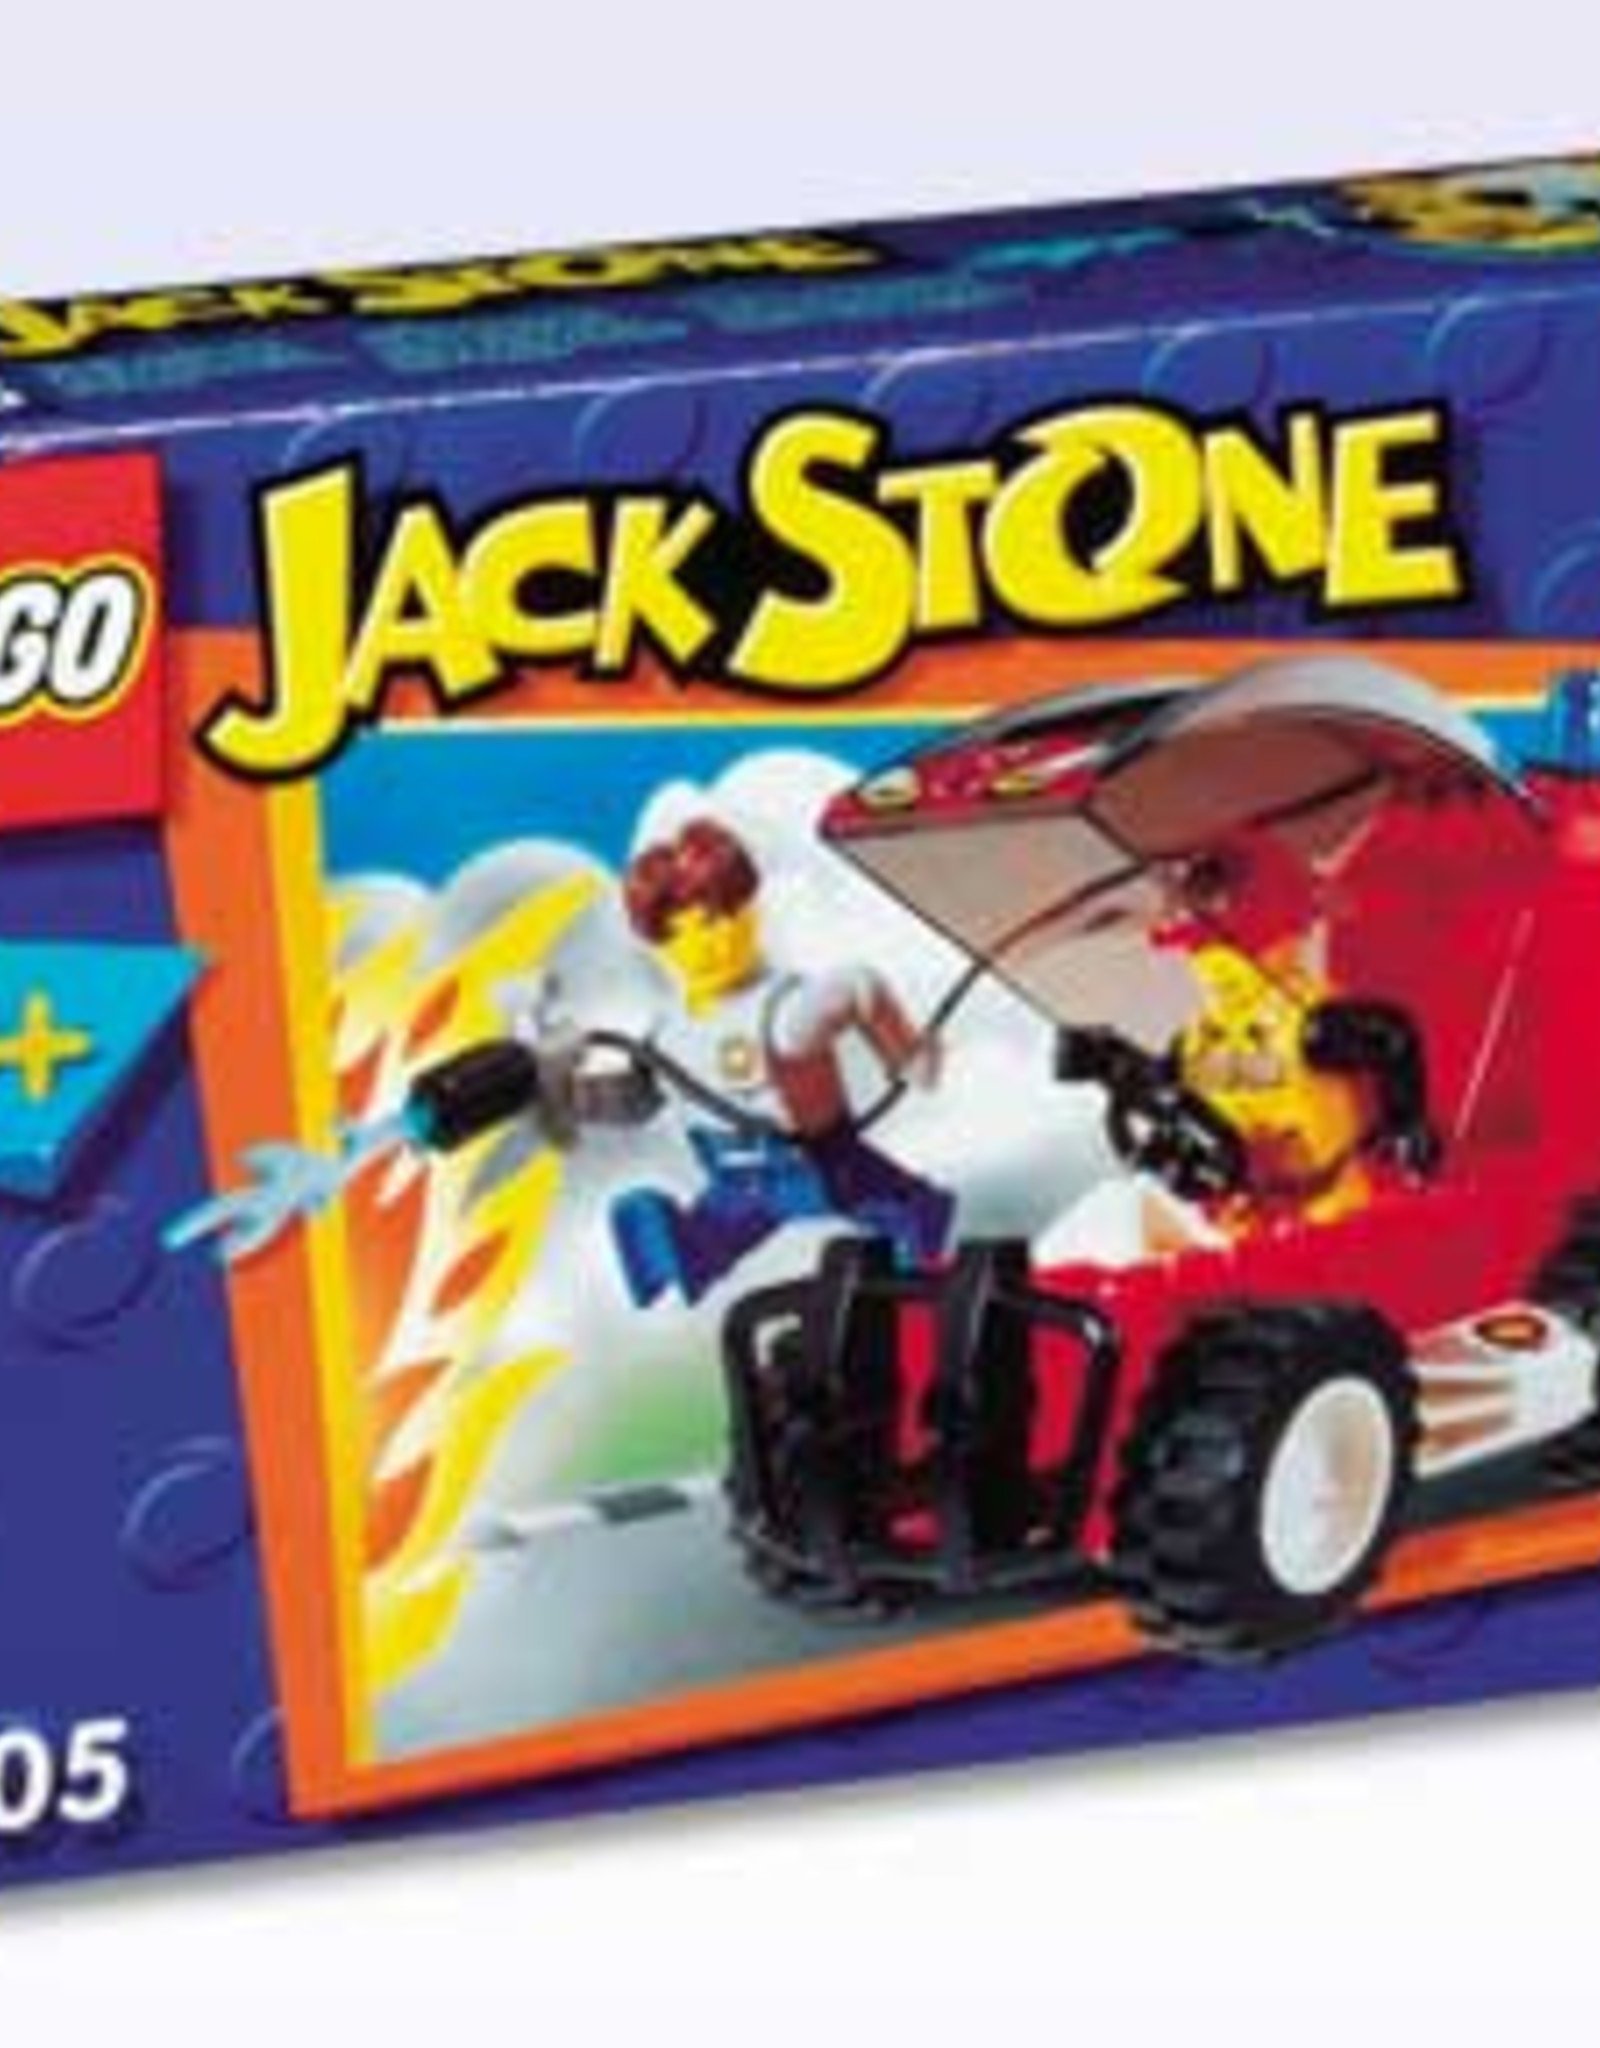 LEGO LEGO 4605 Fire Response SUV JACK STONE